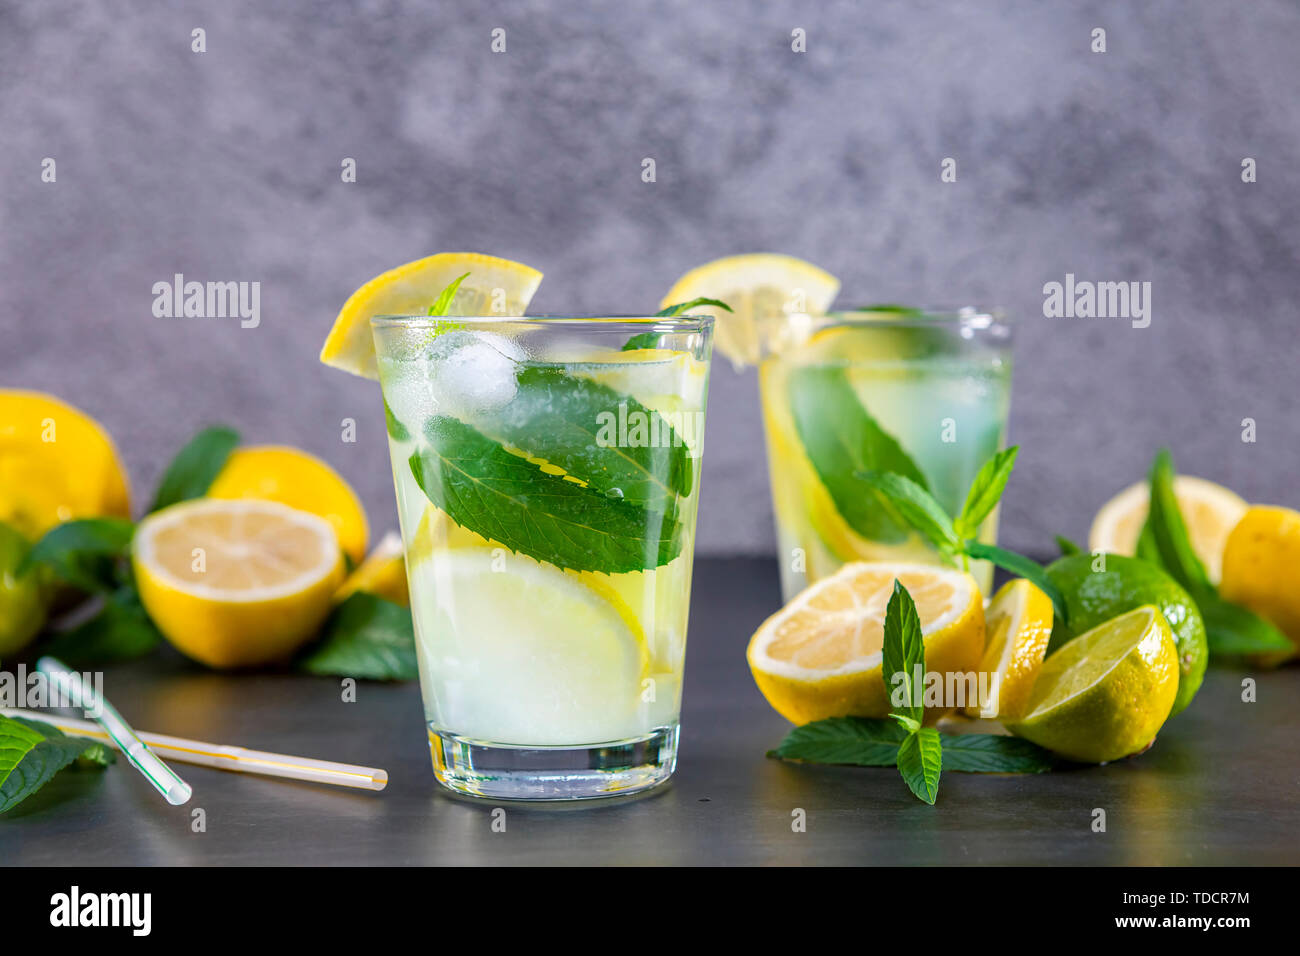 Rempli de limonade d'été à la menthe dans un verre sur un fond noir et gris. Se concentrer sur le verre. Banque D'Images